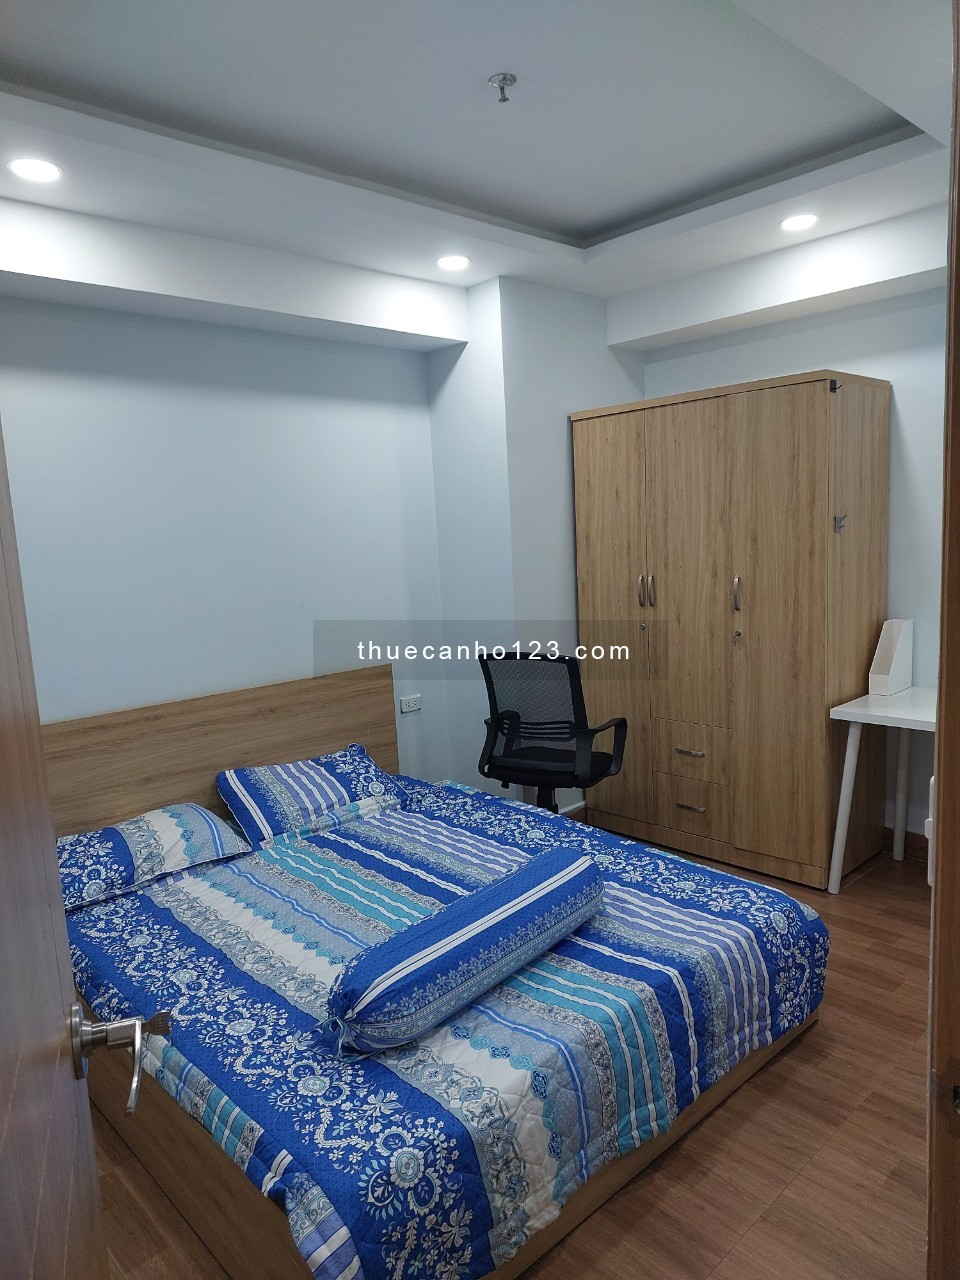 Cần cho thuê căn hộ Cosmo City, 99 Nguyễn Thị Thập, Tân Phú, Quận 7, diện tích 78m2, 2 phòng ngủ